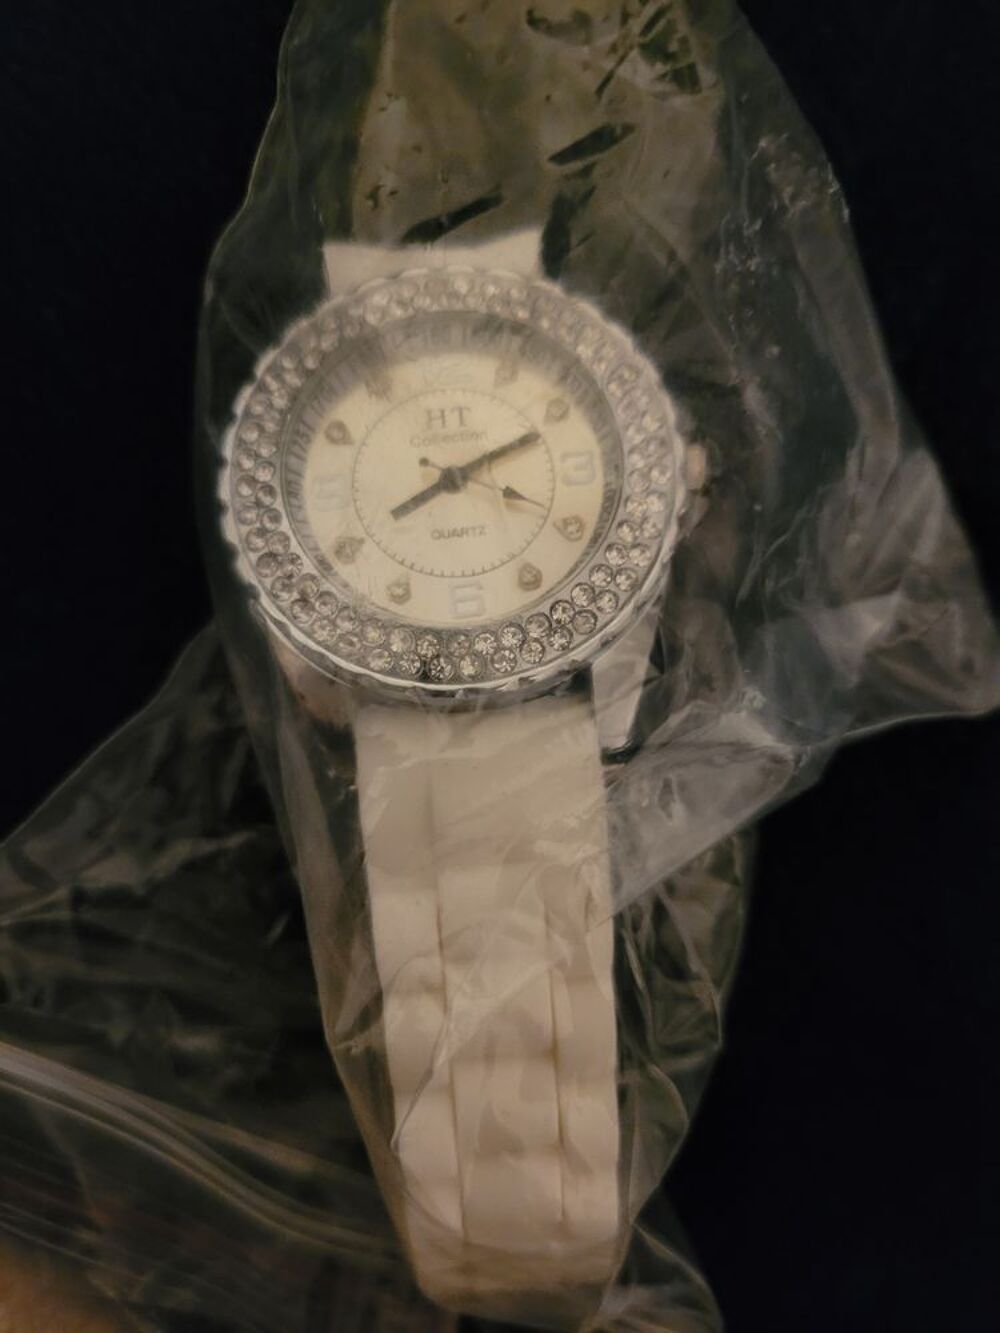 Montre neuve quartz HT Collection Bijoux et montres